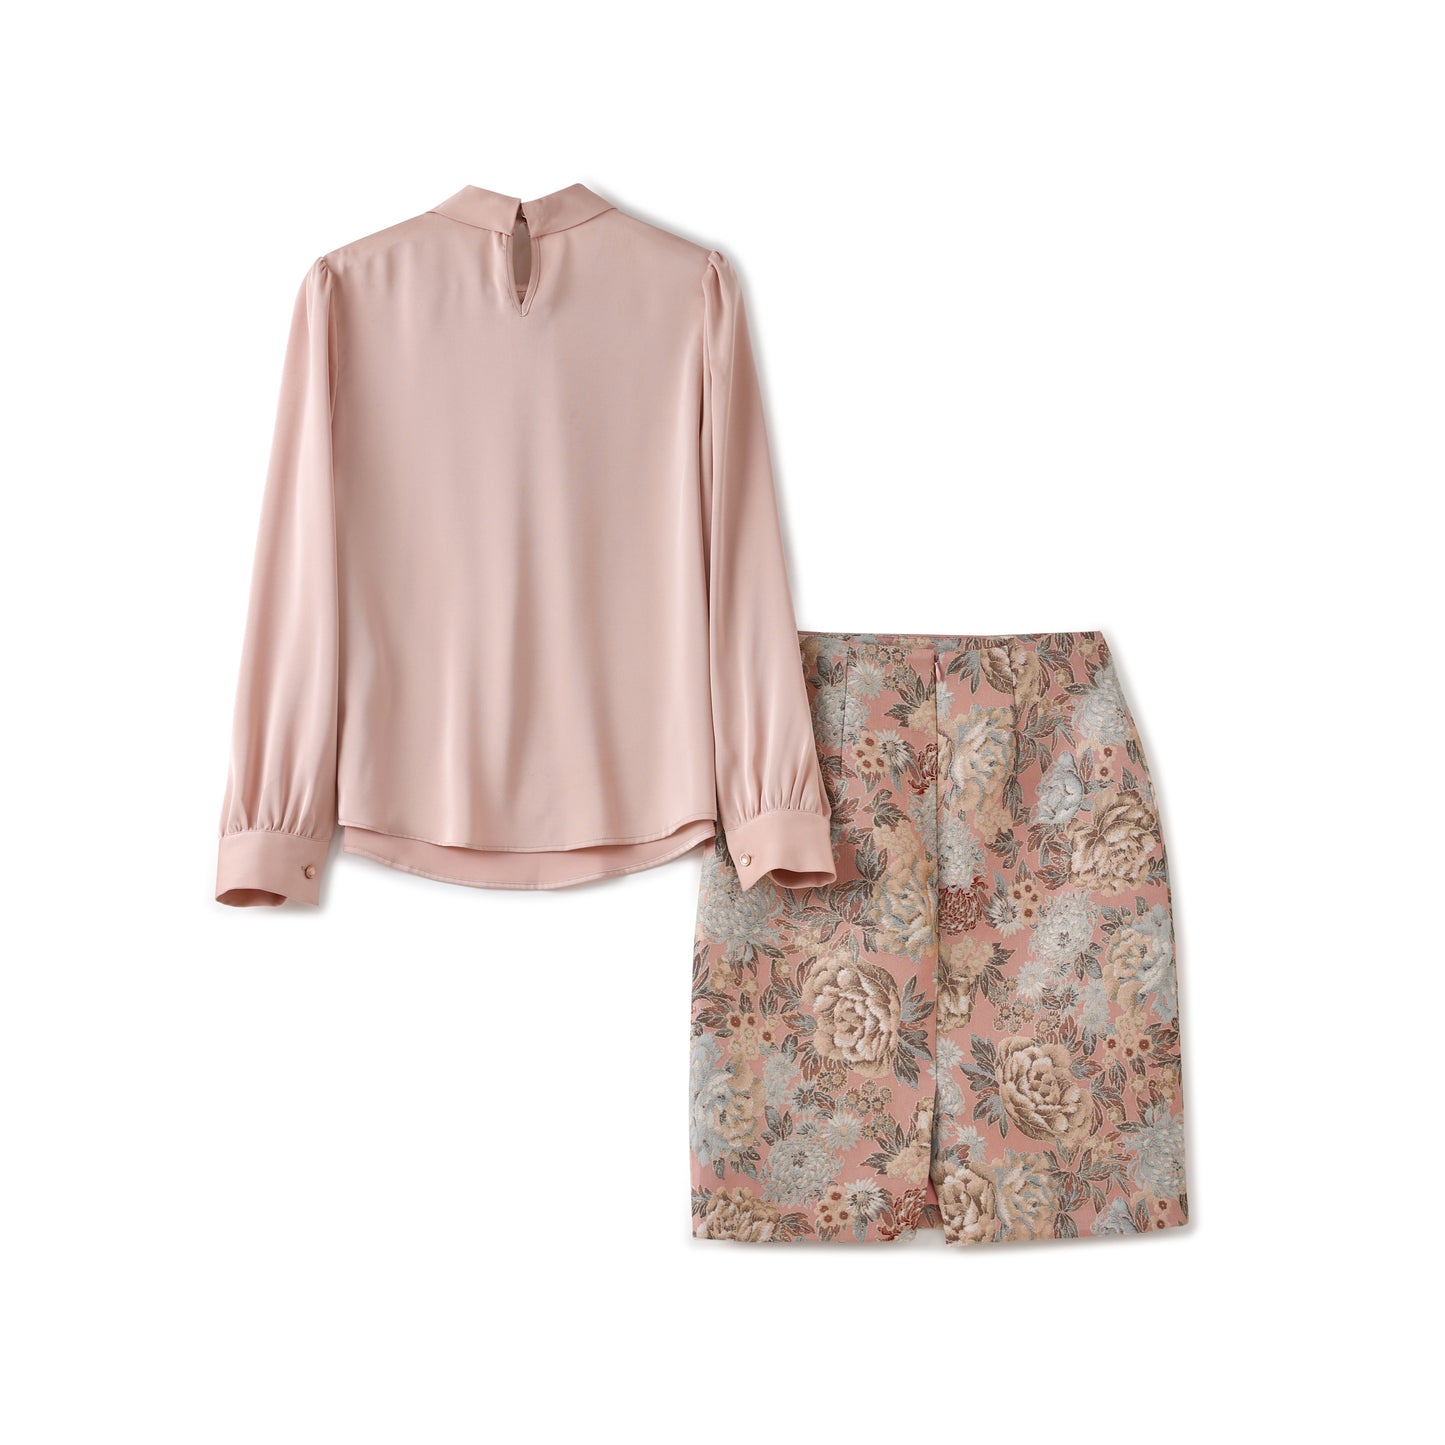 Ariana 2 pcs set satin floral shirt with jacquard floral skirt